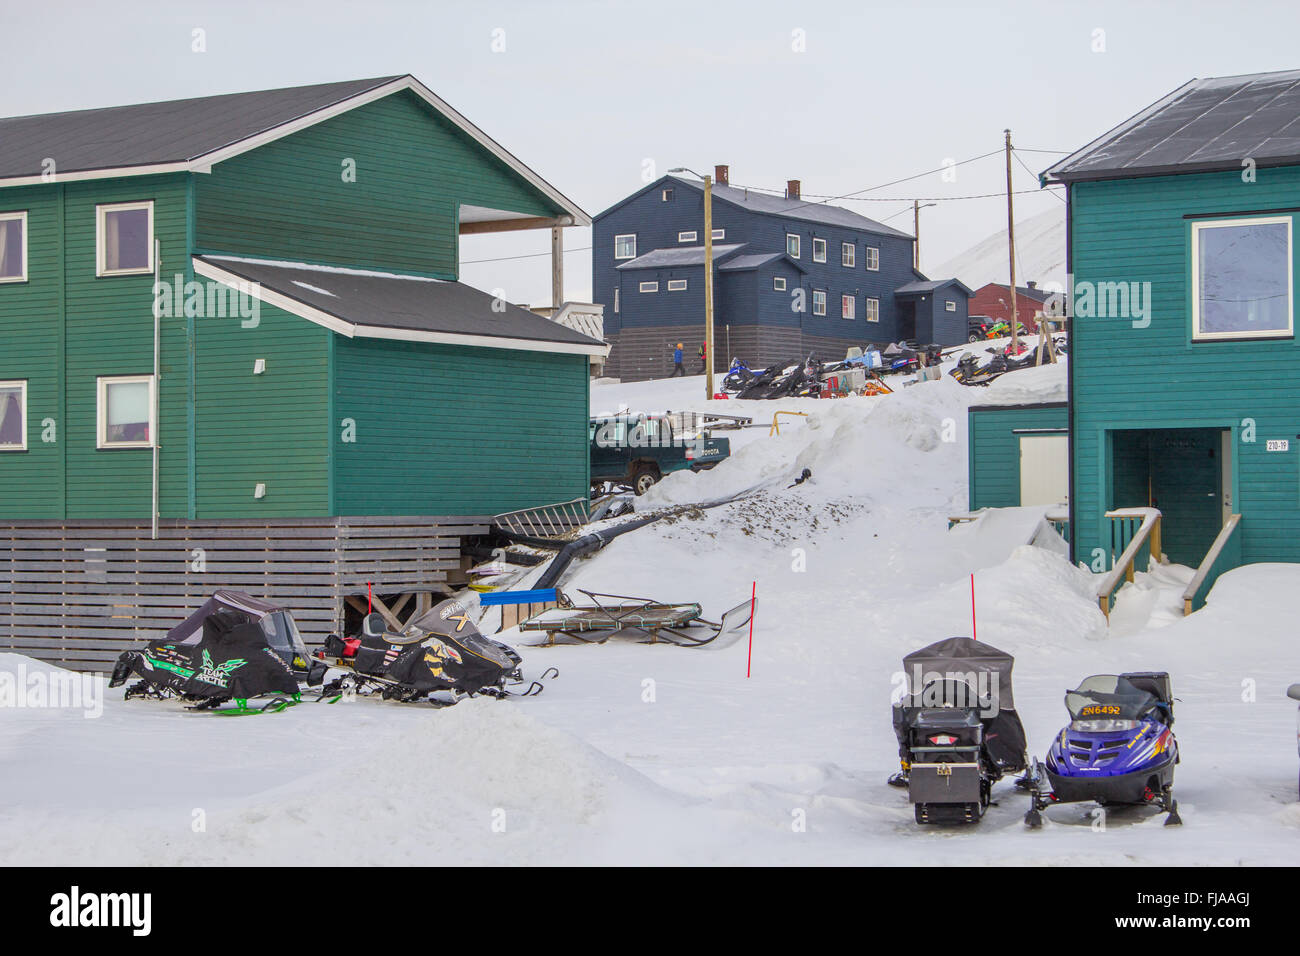 Maisons de quartier résidentiel à Longyearbyen, Svalbard (Spitzberg). Mars, encore beaucoup de neige. Banque D'Images